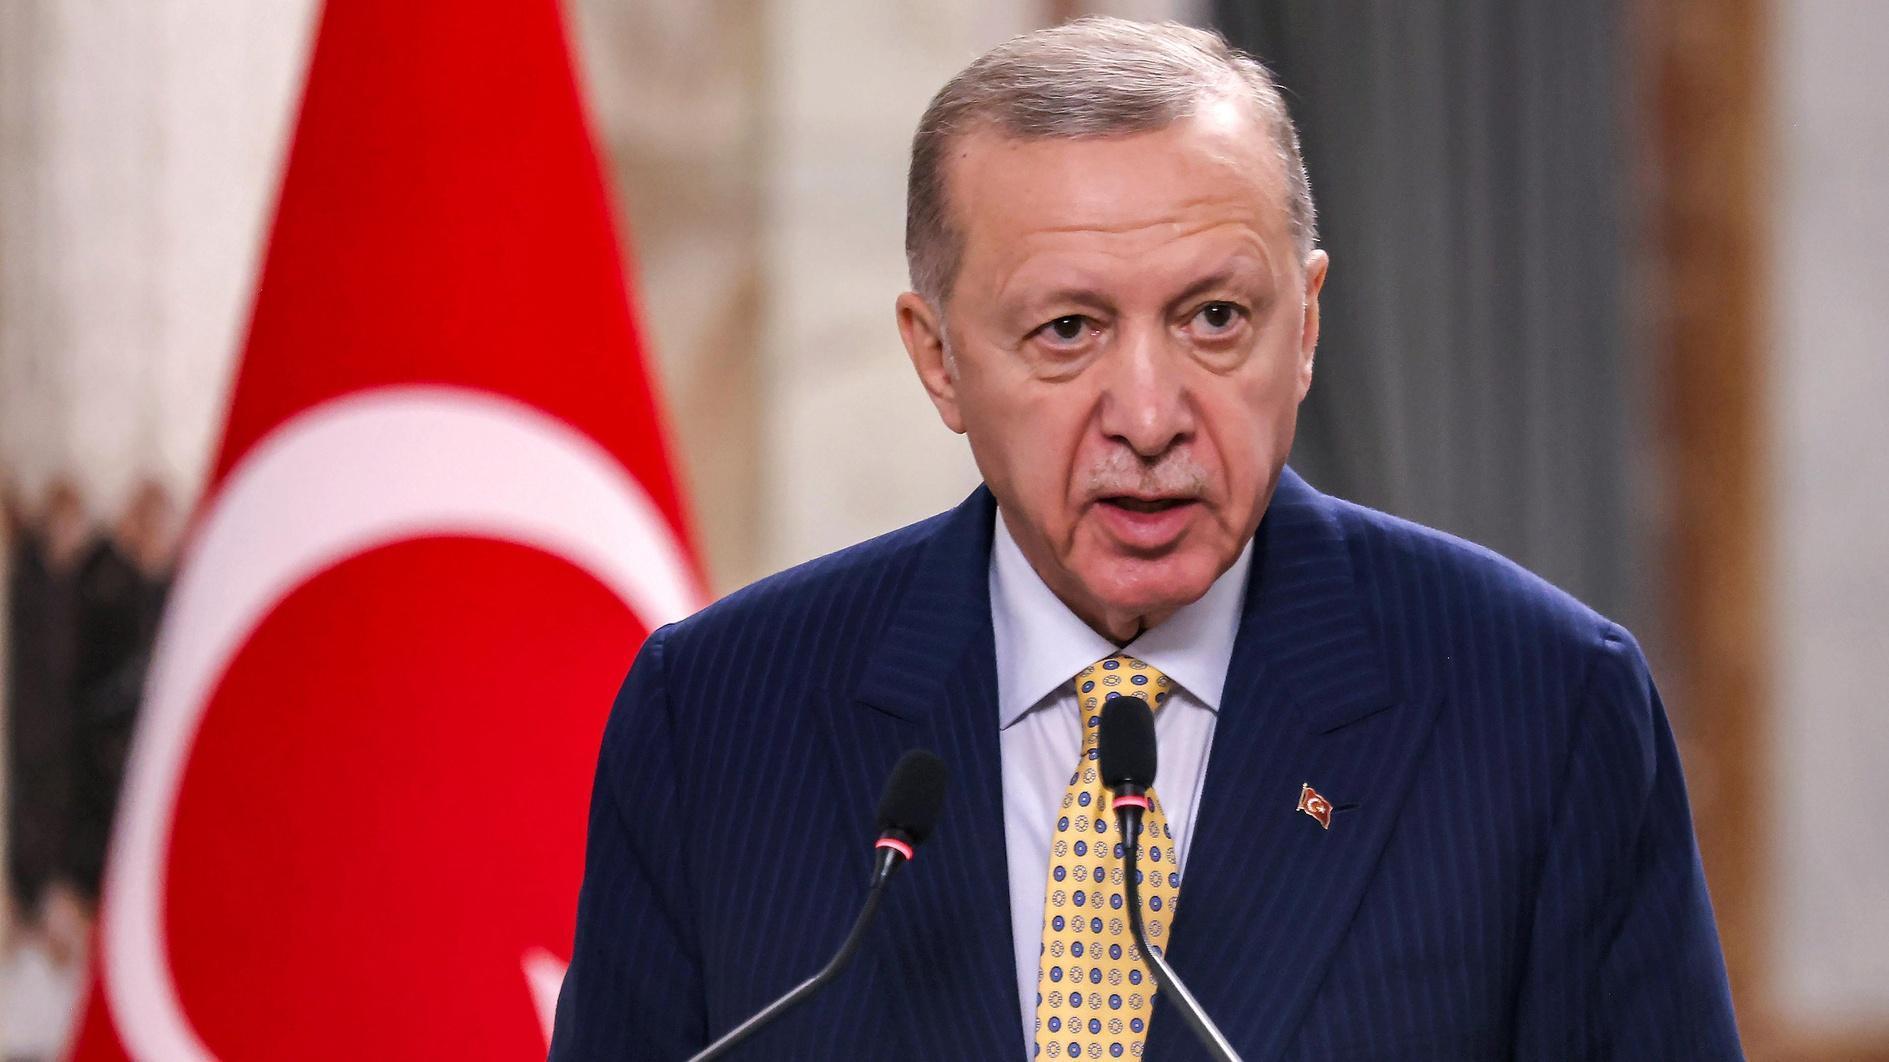 Erdoğan belooft Israël verantwoordelijk te houden voor de acties in Gaza